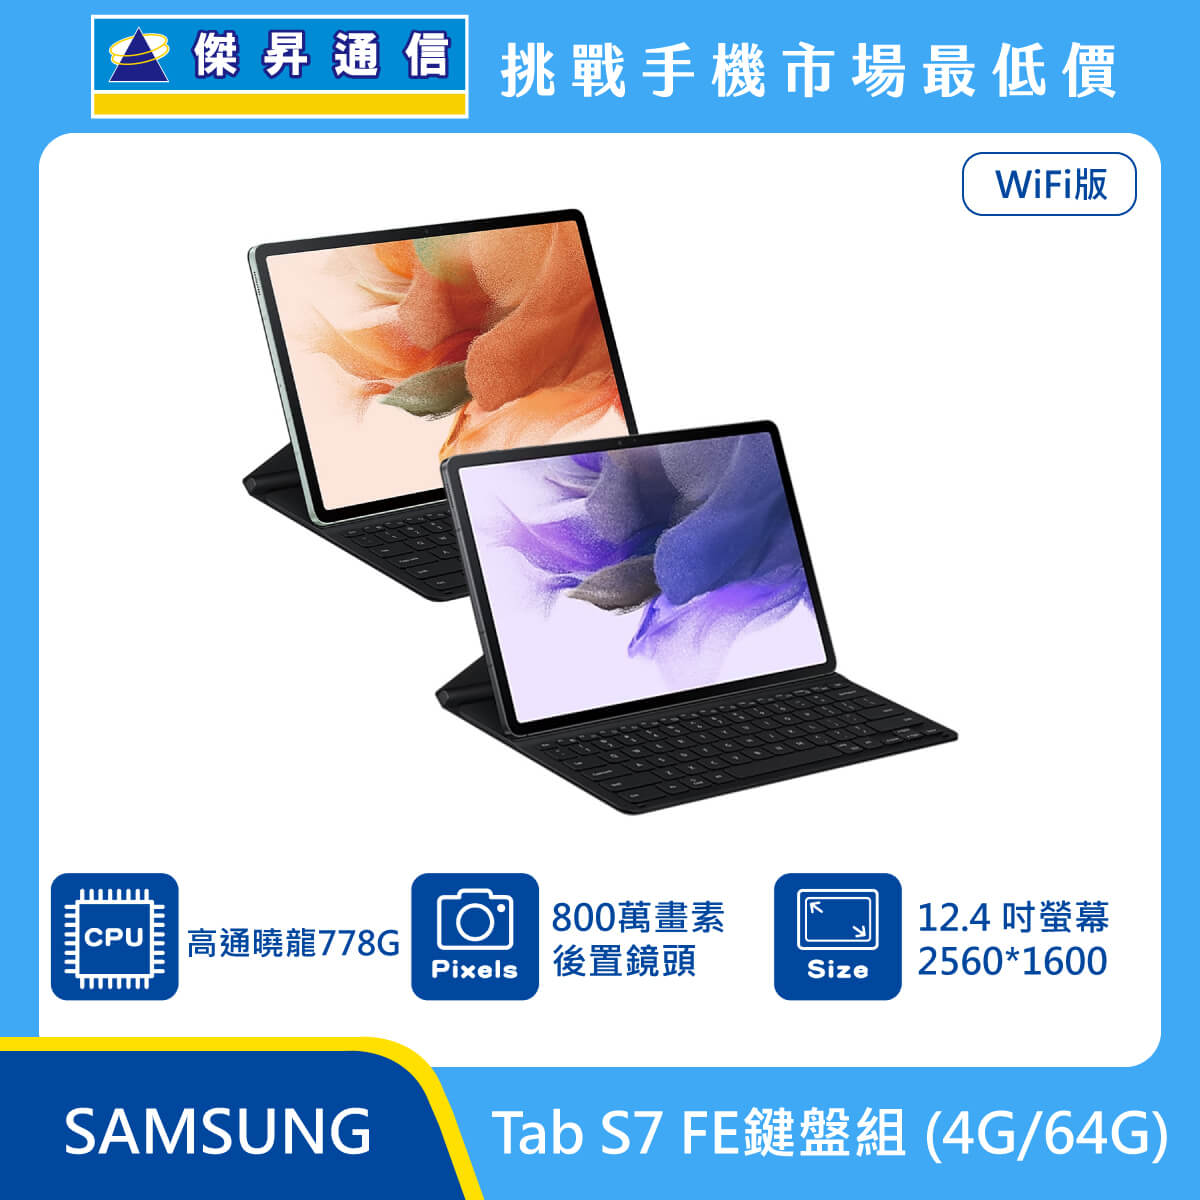 SAMSUNG 平板 Tab S7 FE Wi-Fi (4G/64G)鍵盤組